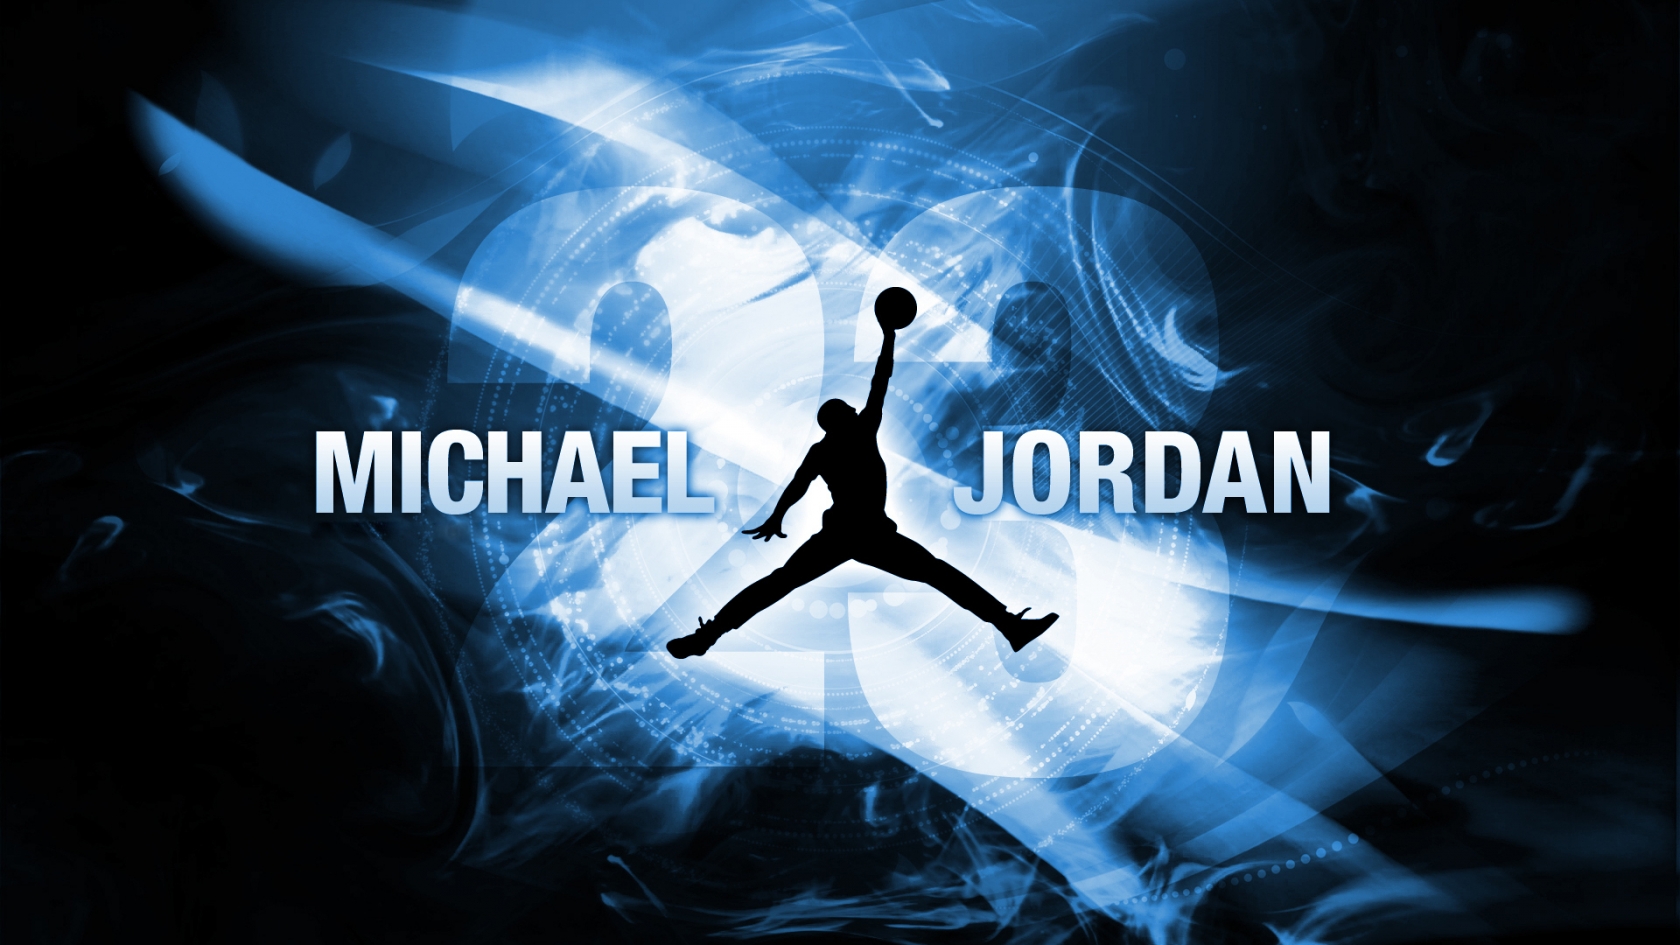 Michael Jordan for 1680 x 945 HDTV resolution